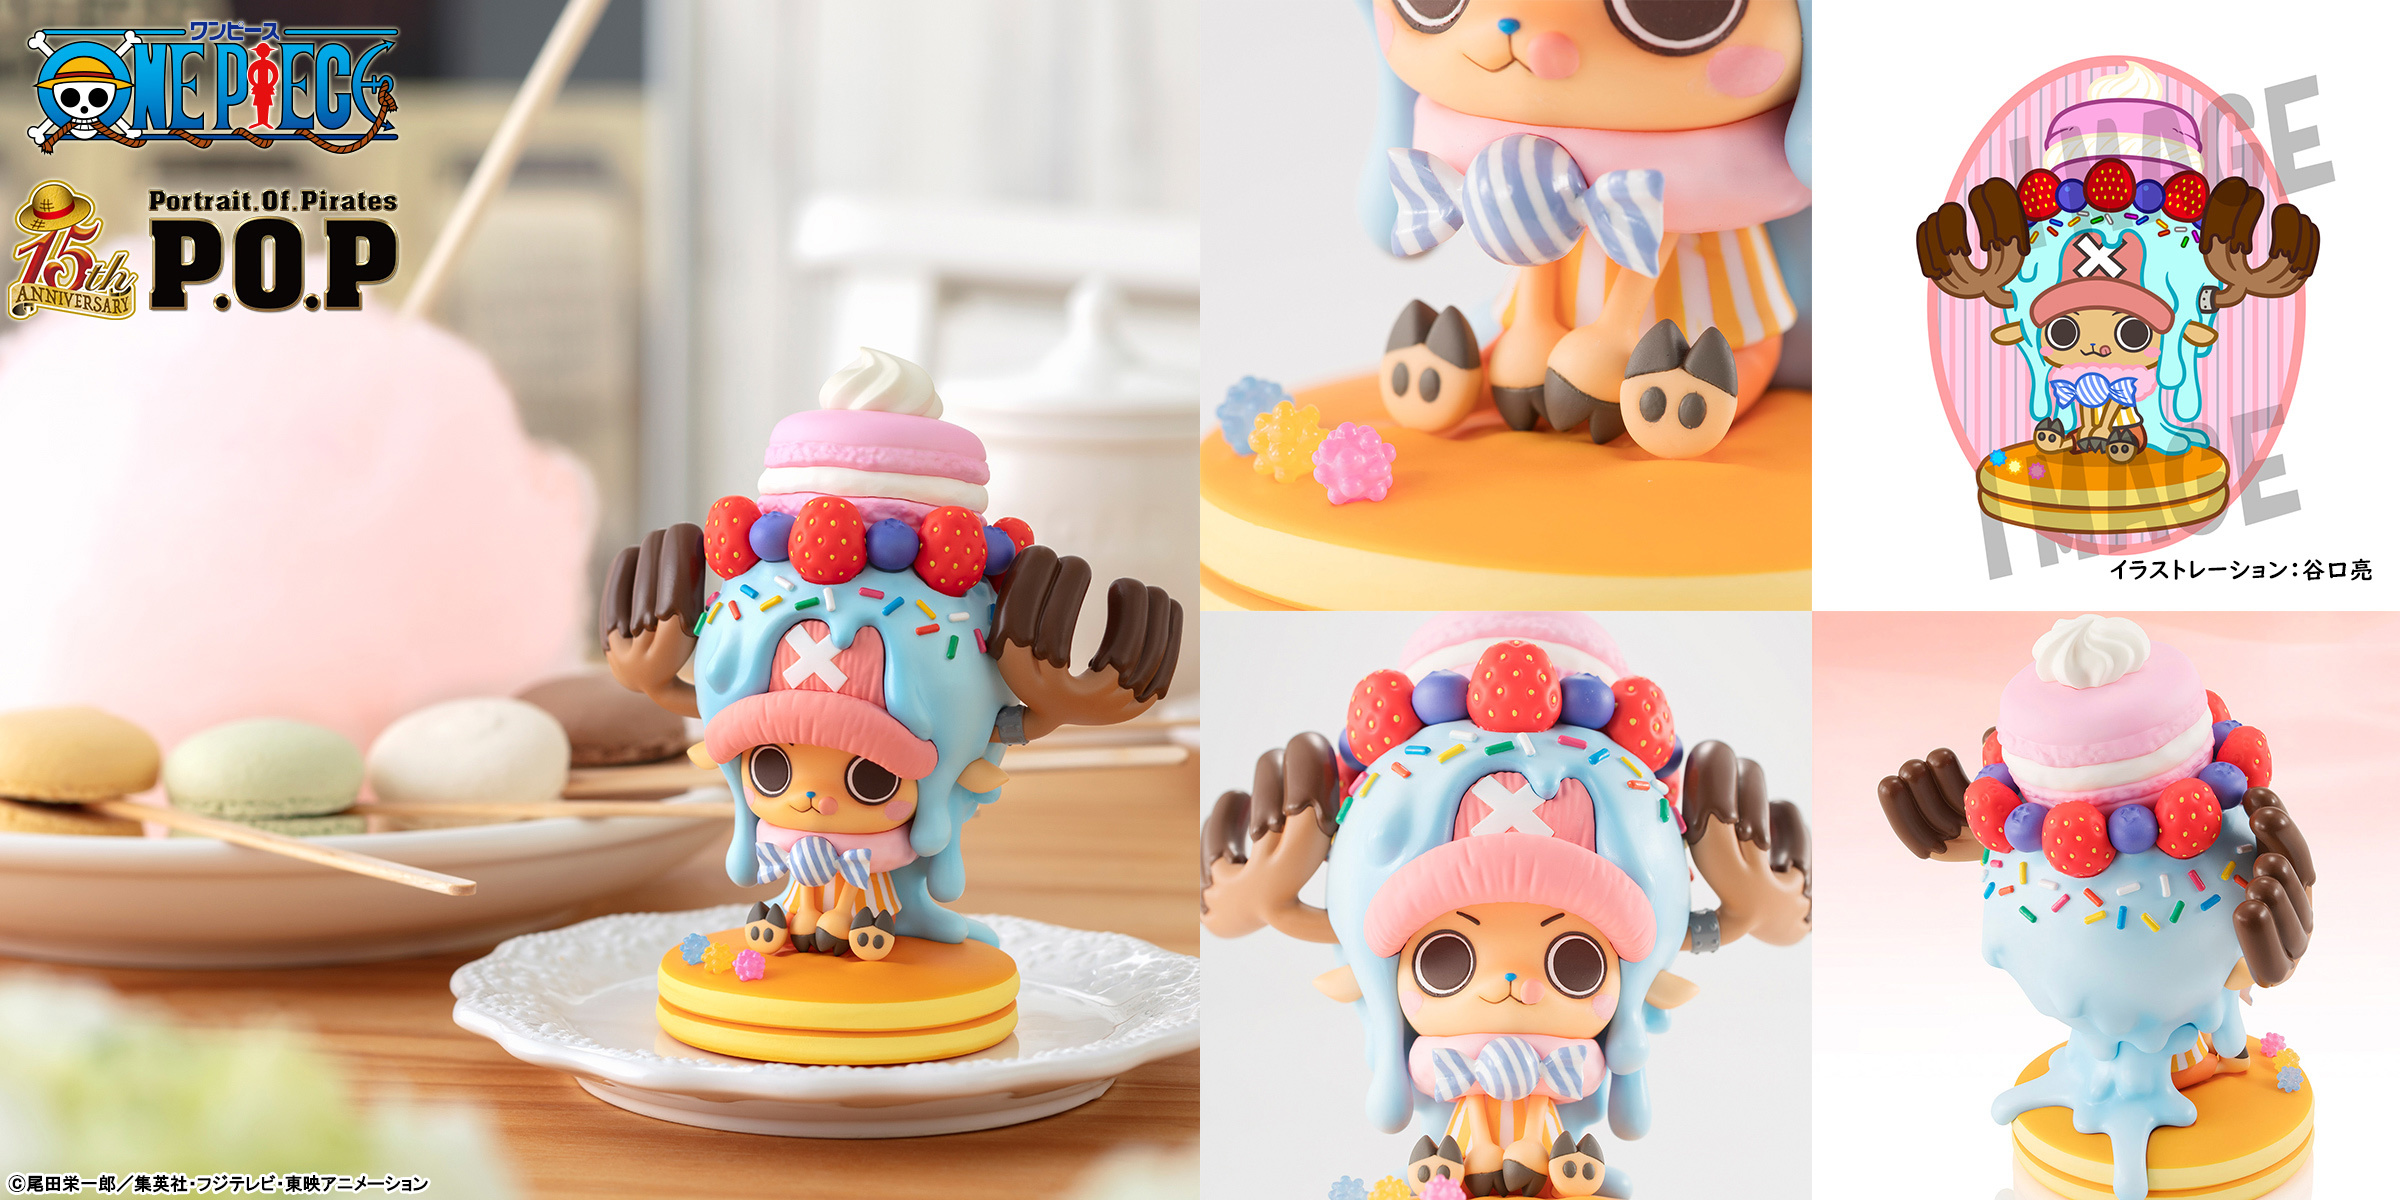 イラストレーター 谷口亮氏がワンピースのチョッパーをデザイン！
パンケーキの上でお菓子を身にまとった姿を立体化